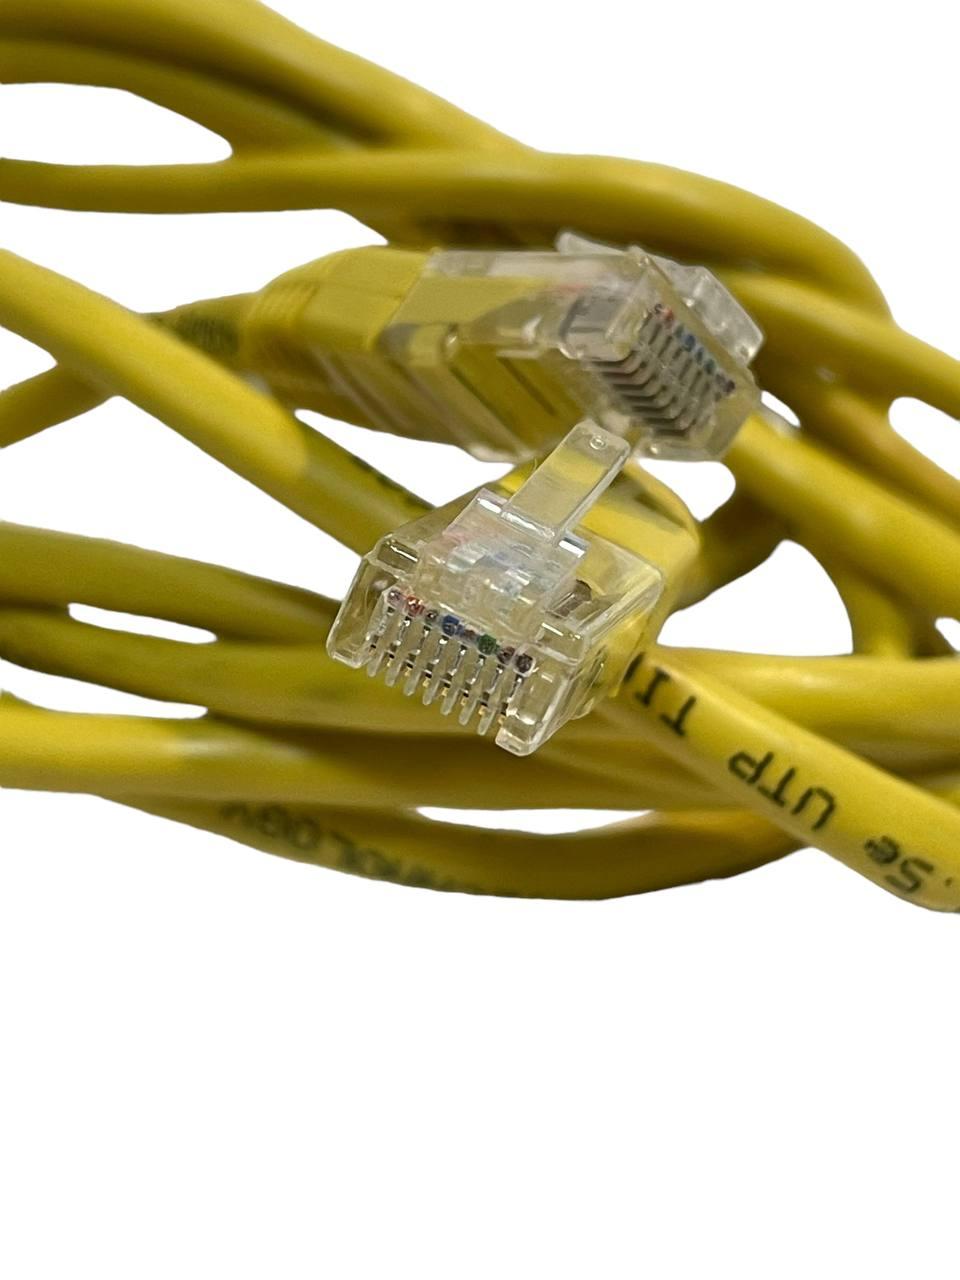 Кабель патч-корд до 2 метрів | Кабель для інтернету до 2 м. | AWM 2835 24AWG 60c 30v FT2 E237114 LAN кабель | Patch Cord, фото 1